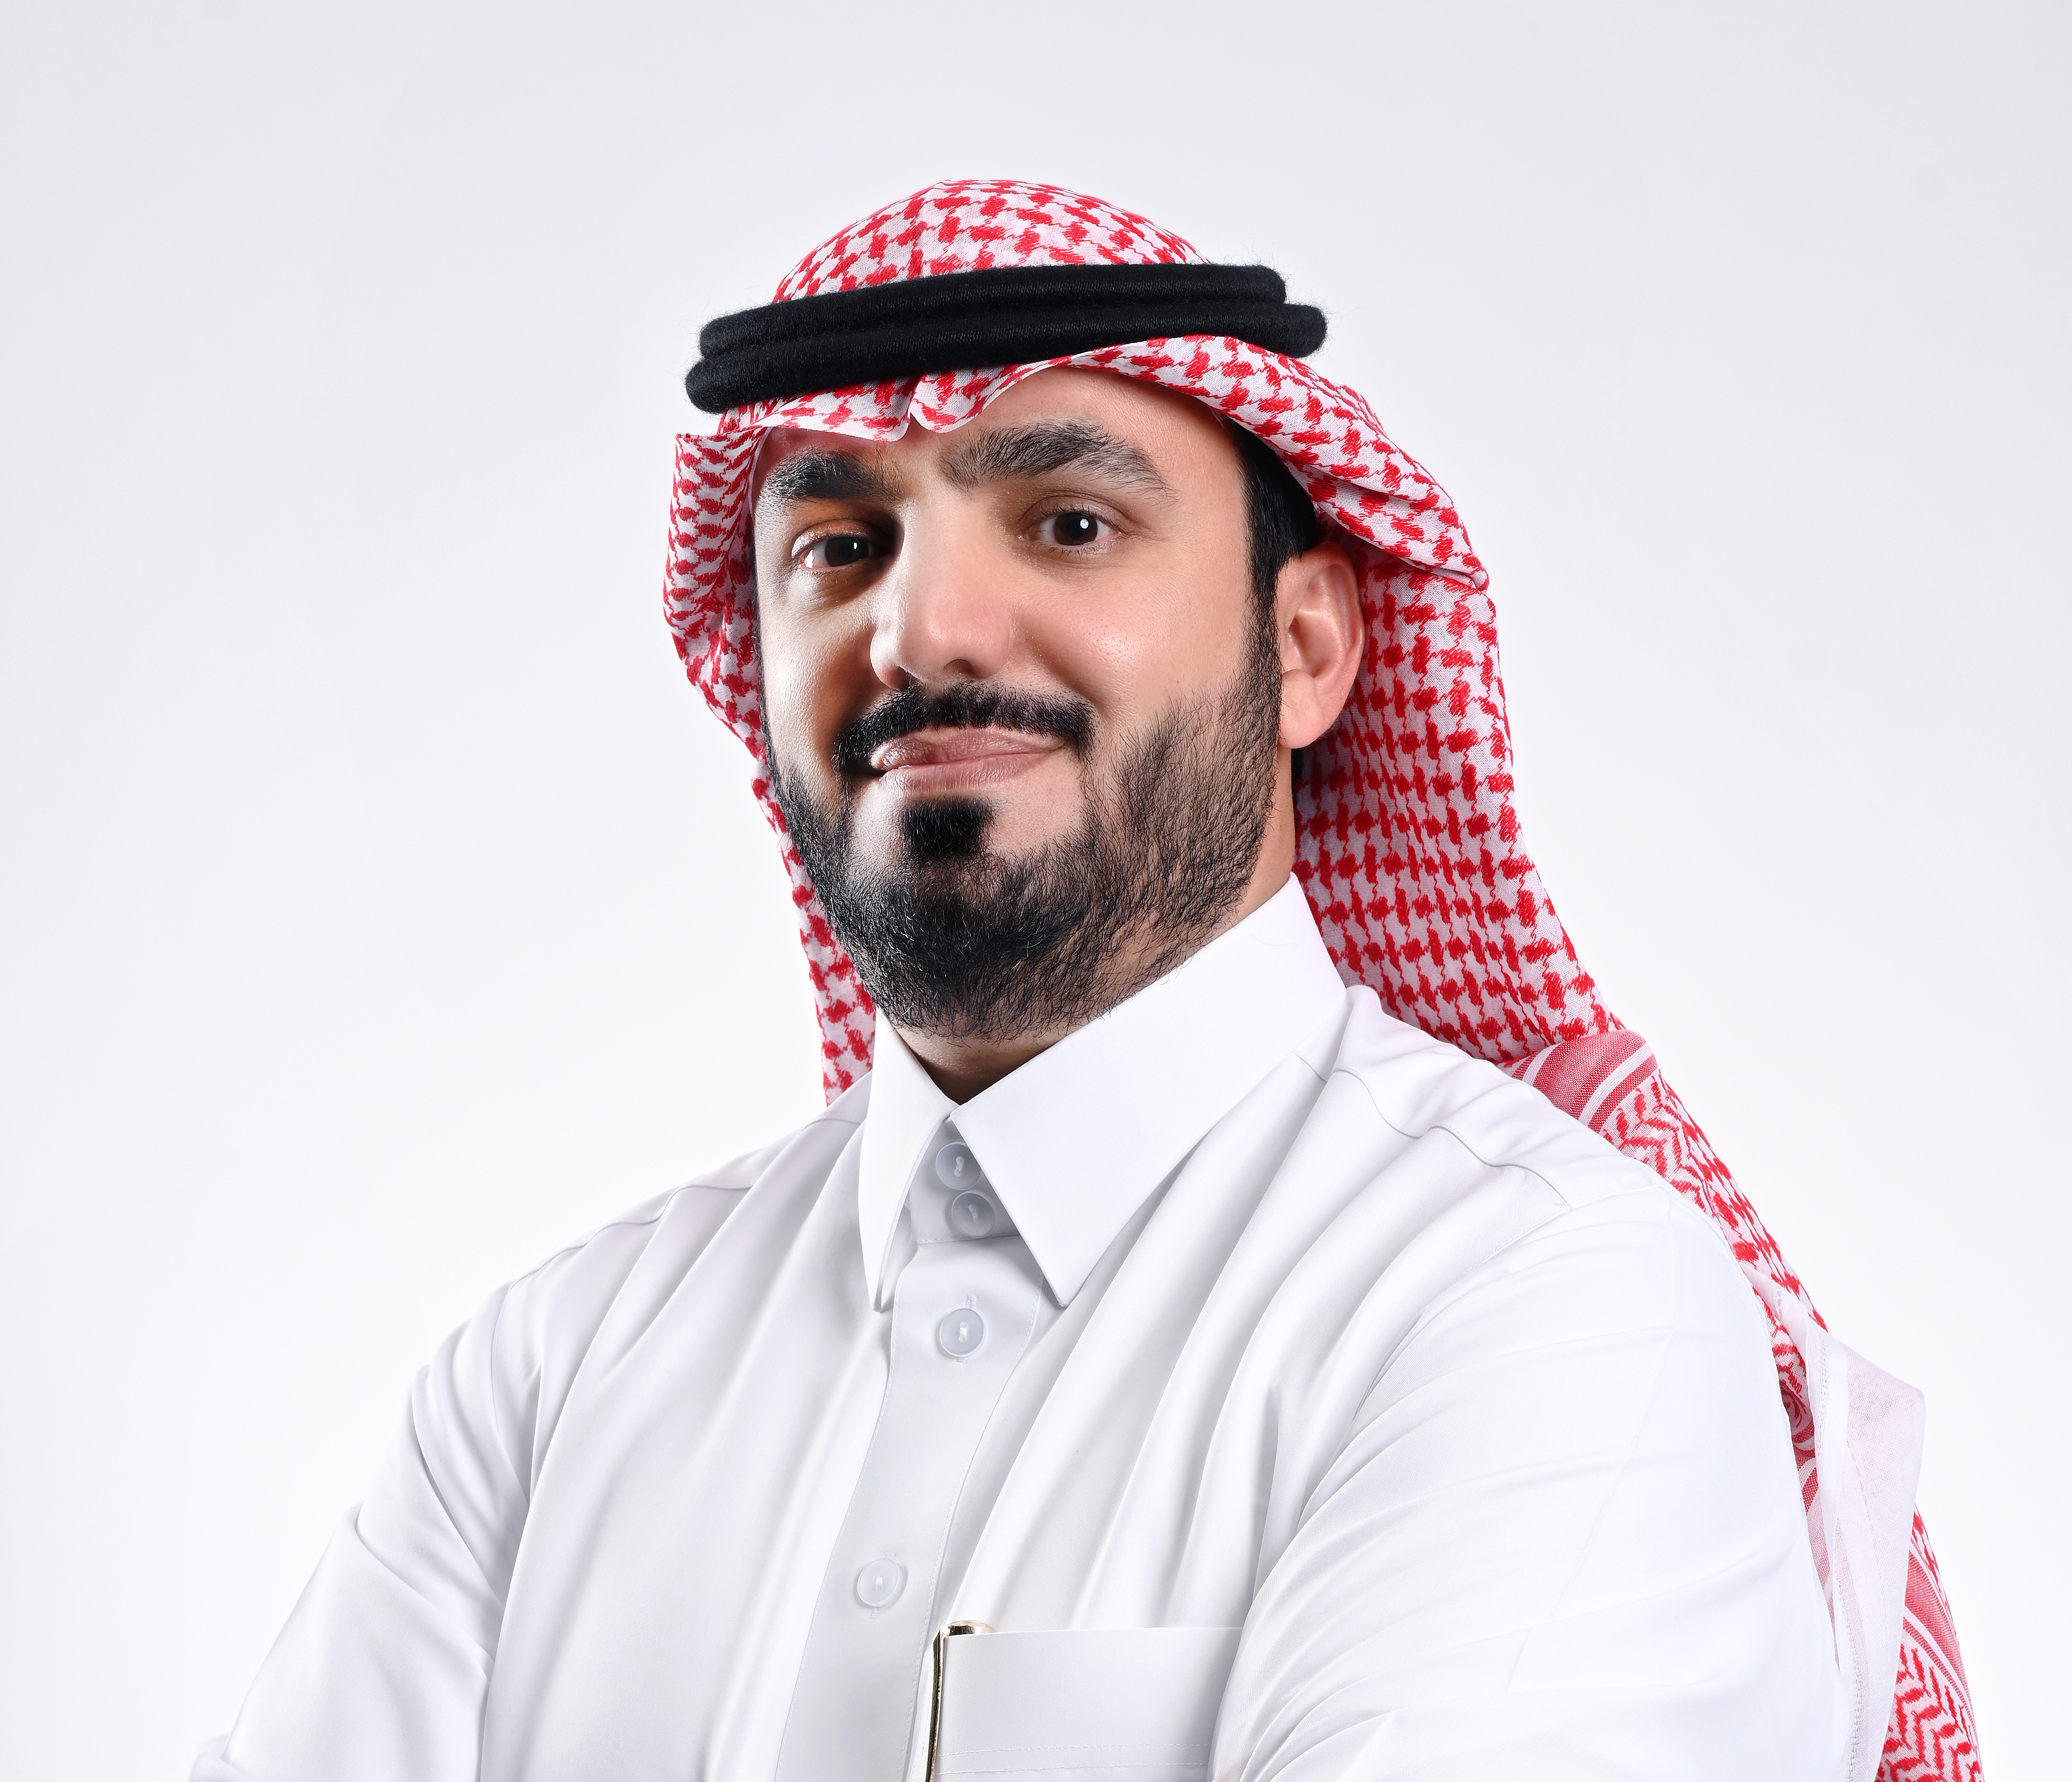 SAL Logistics Announces Mr. Faisal Al Beddah as CEO and Managing Director